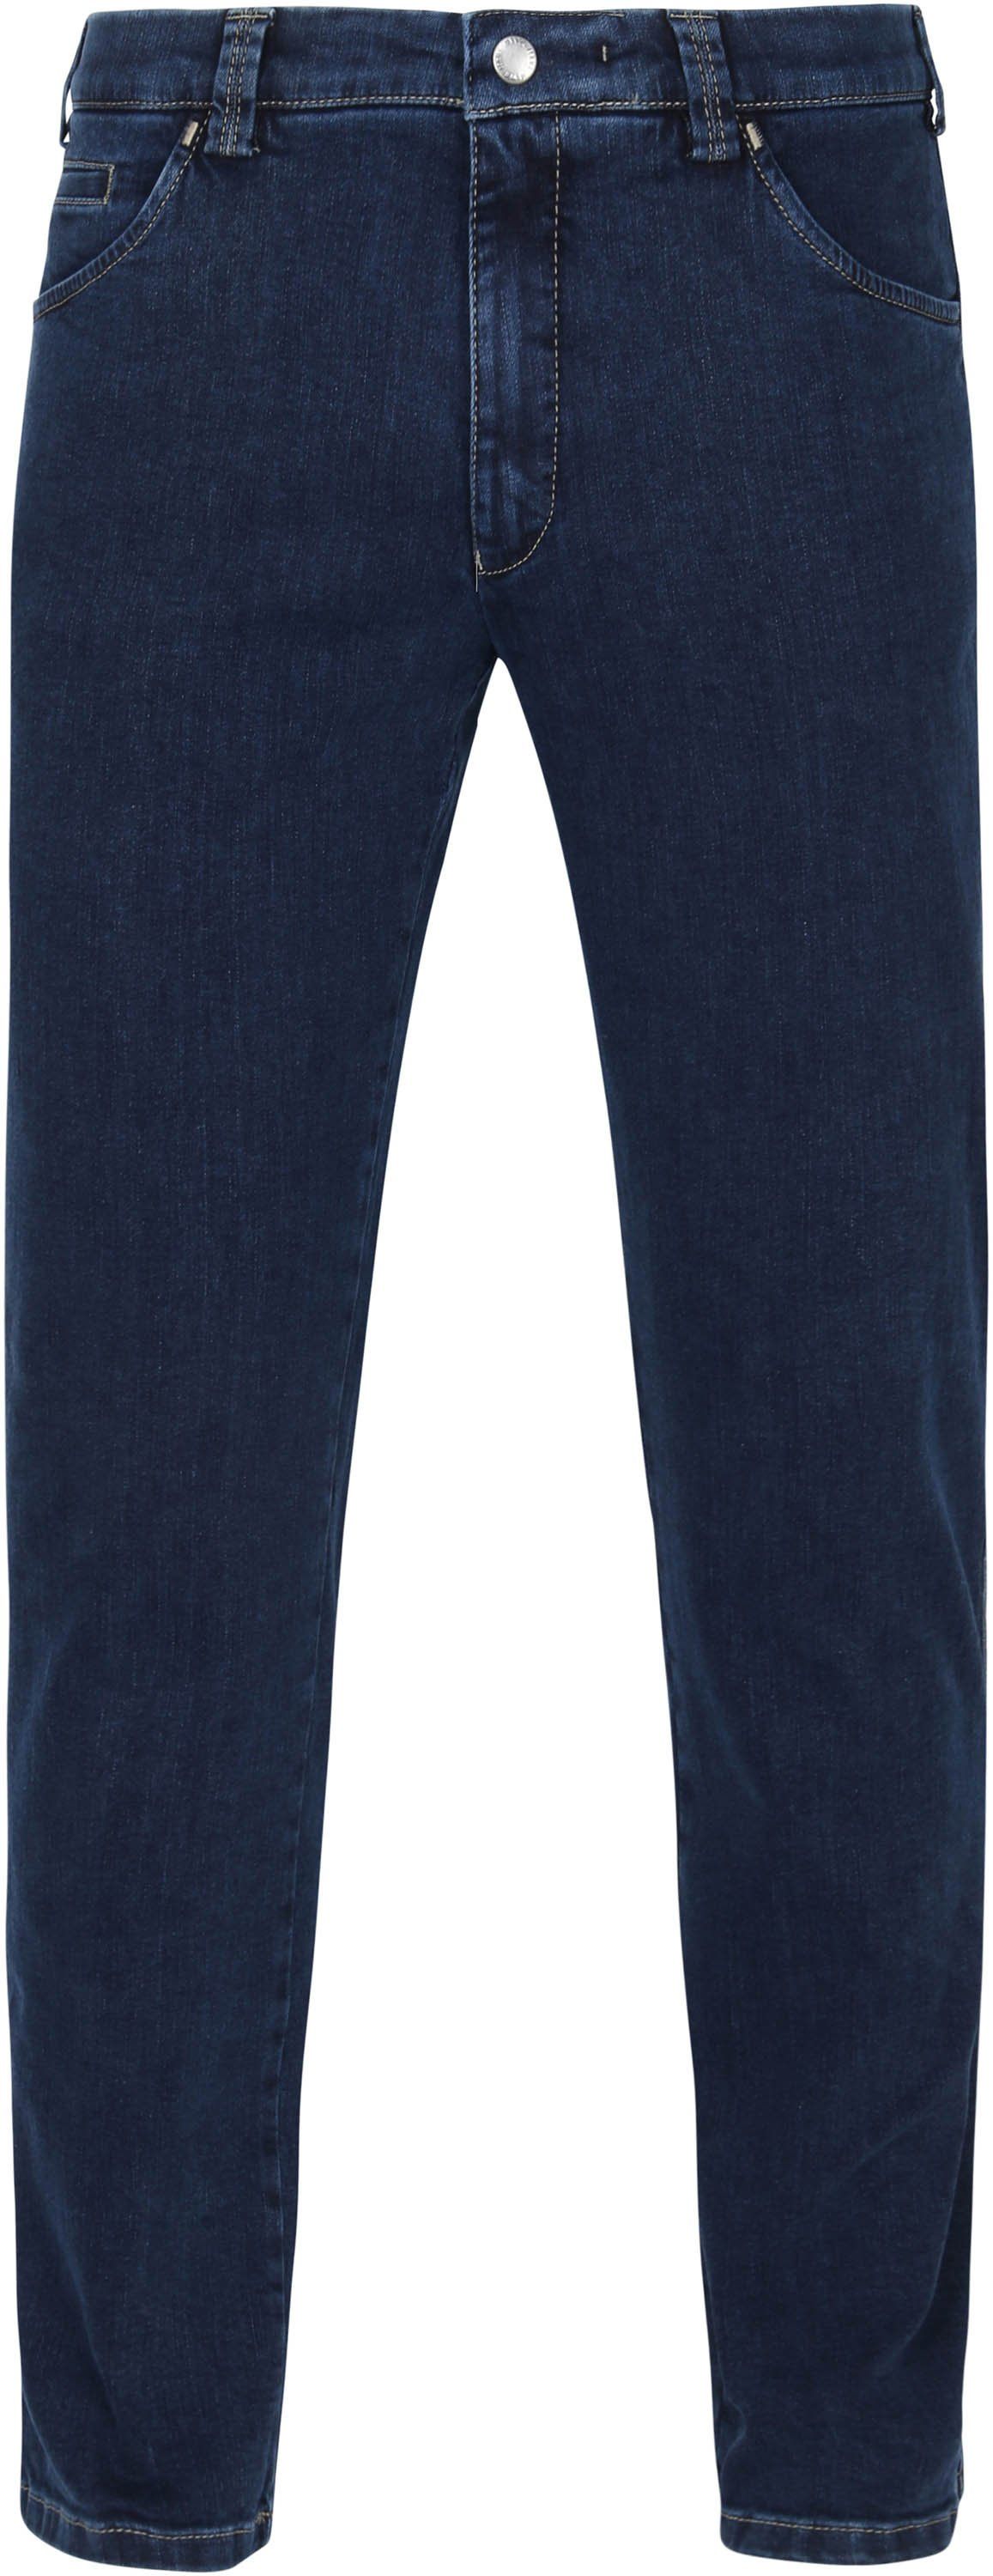 Meyer Dublin Jeans Blue size W 34